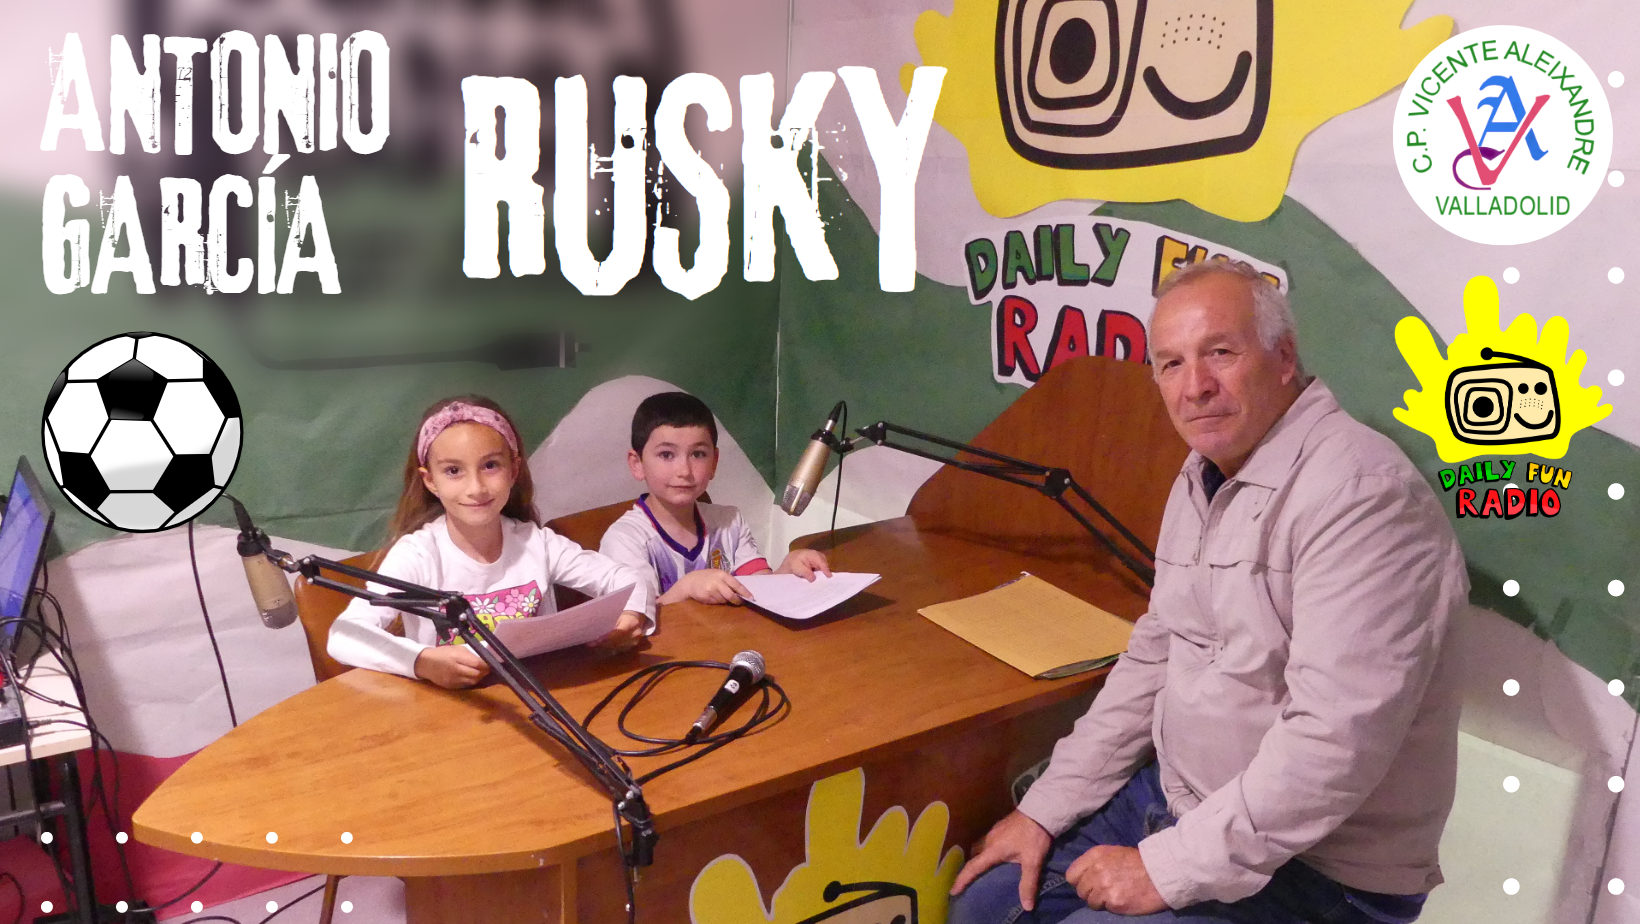 Daily Fun Radio Rusky